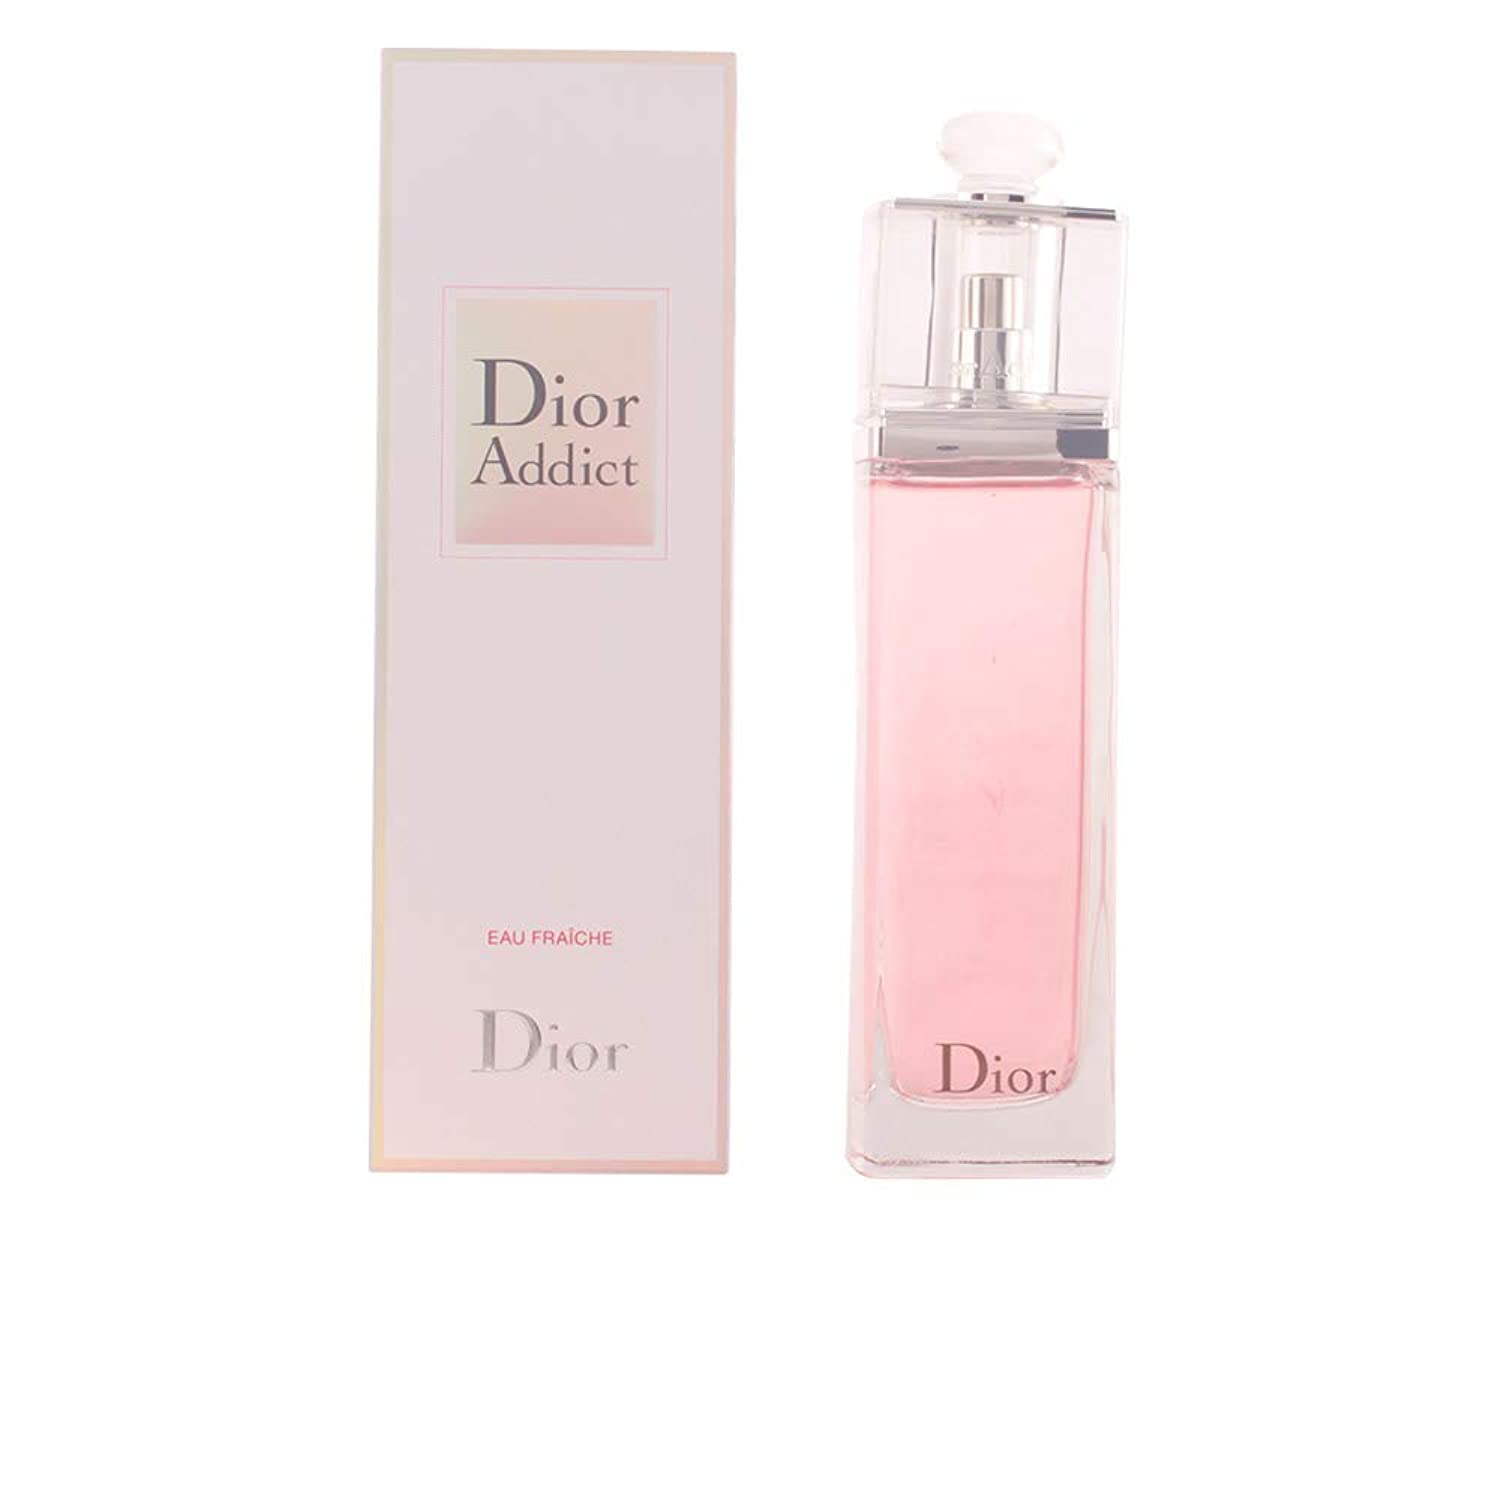 Dior Addict Eau Fraiche Christian Dior Eau De Toilette Spray 100ml